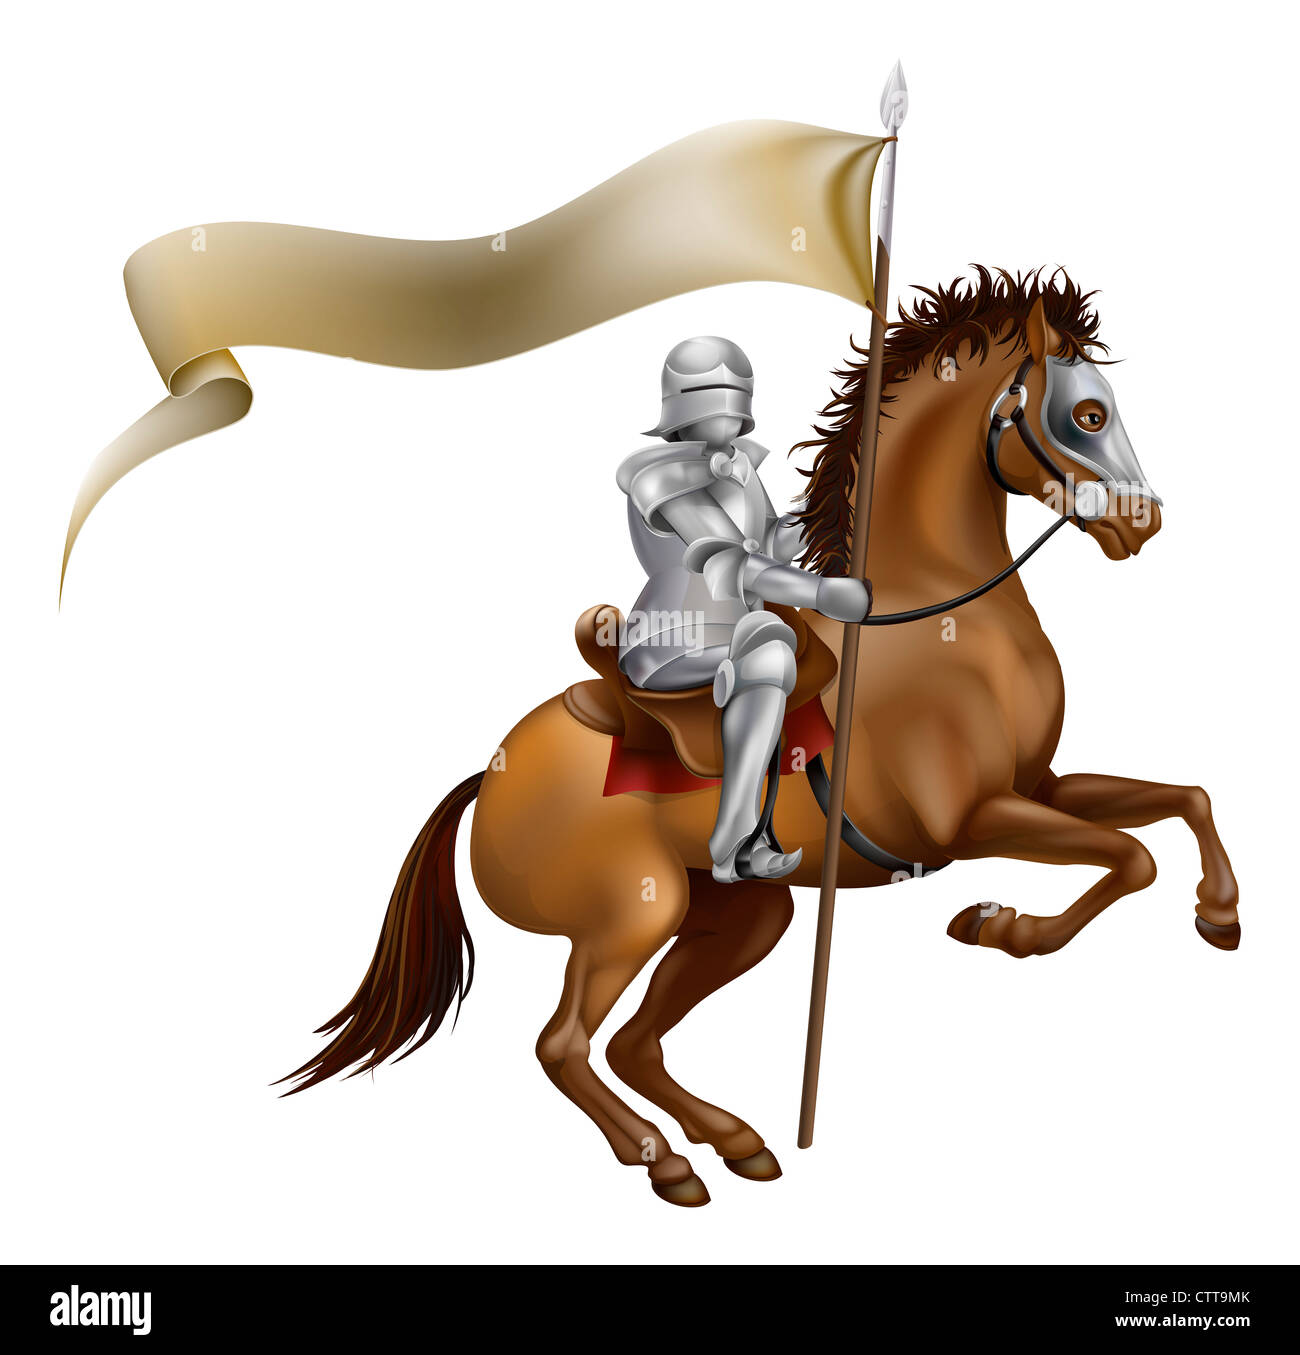 Un caballero con lanza y estandarte montado sobre un caballo potente Foto de stock